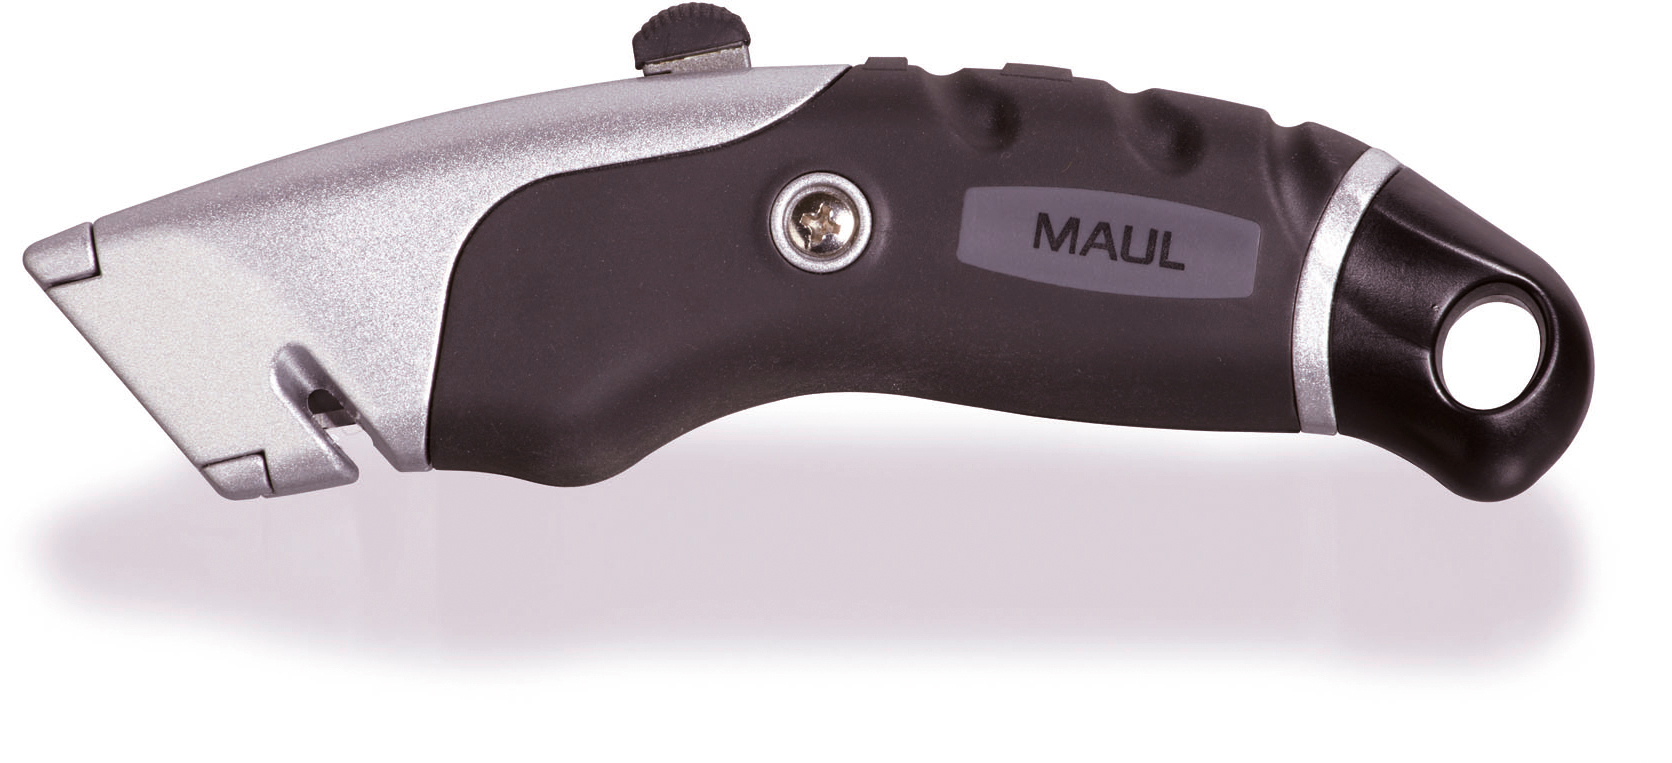 MAUL Cutter 19mm 7782290 Expert